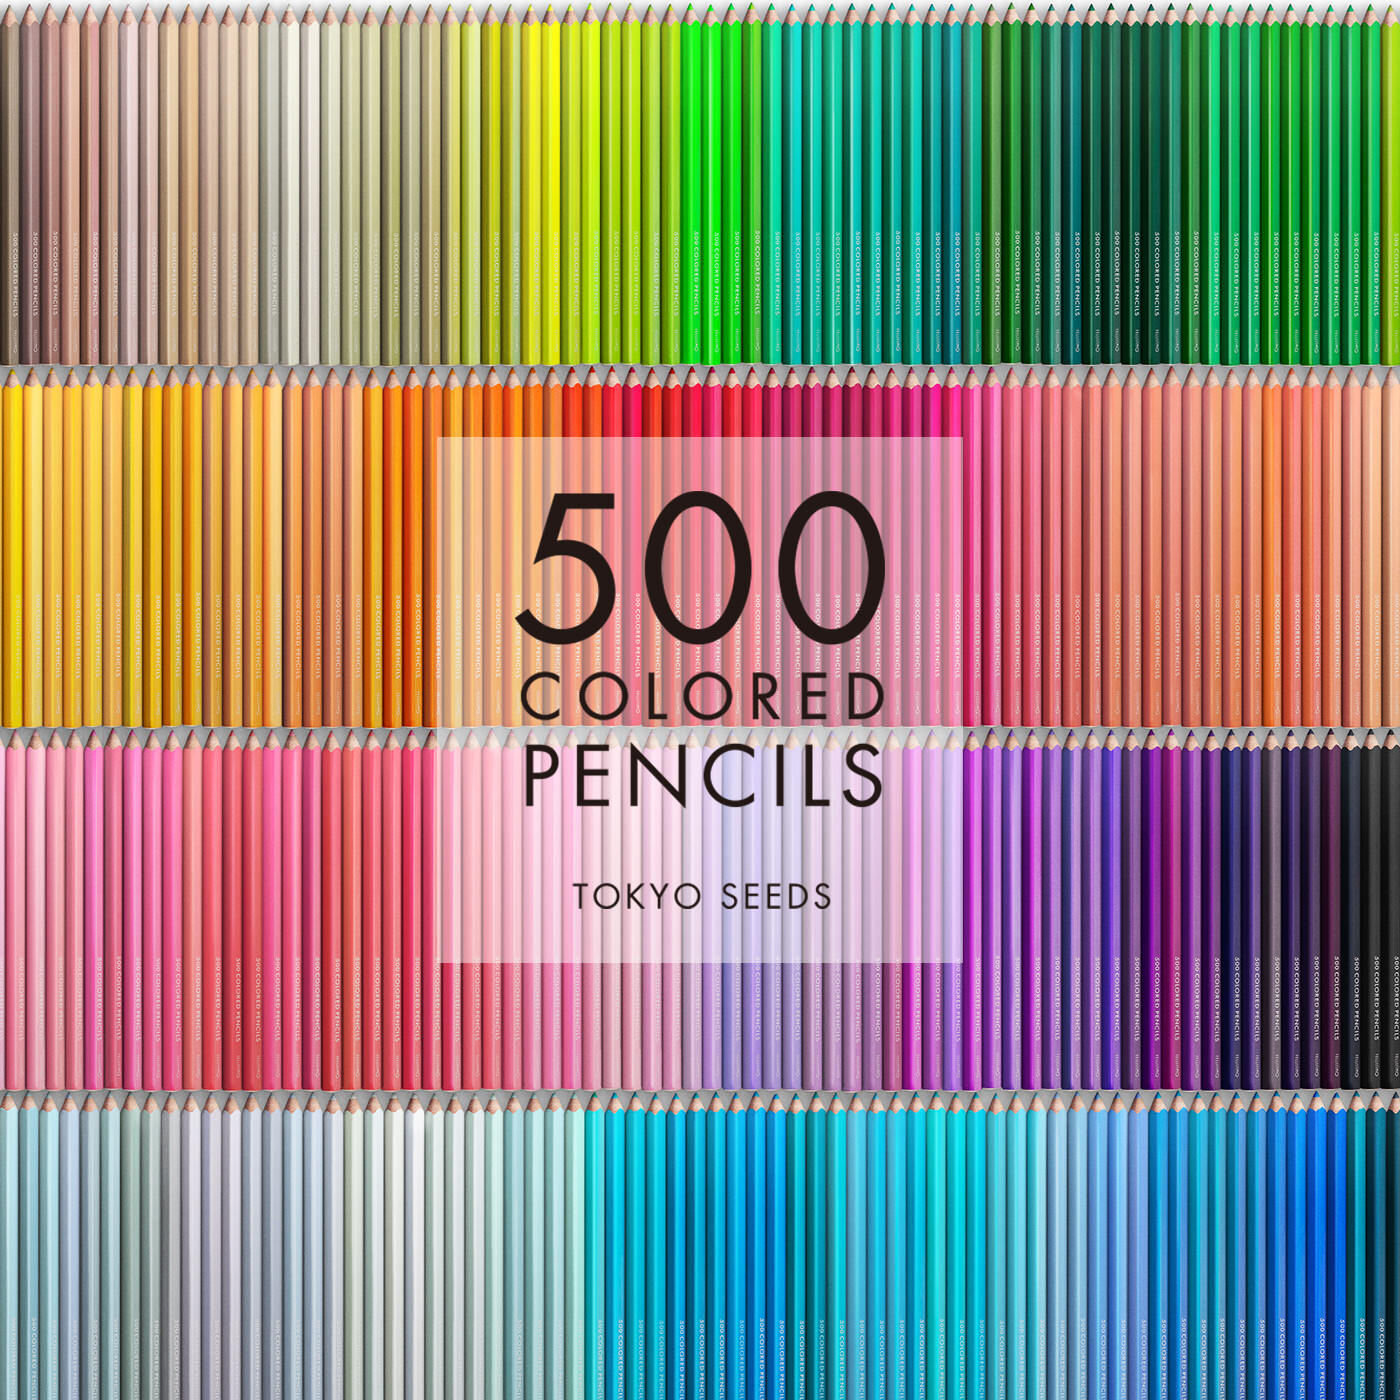 Real Stock|【276/500 BEACH BALM】500色の色えんぴつ TOKYO SEEDS|1992年、世界初の「500色」という膨大な色数の色えんぴつが誕生して以来、その販売数は発売当初から合わせると、世界55ヵ国10万セット以上。今回、メイド・イン・ジャパンにこだわり、すべてが新しく生まれ変わって登場しました。